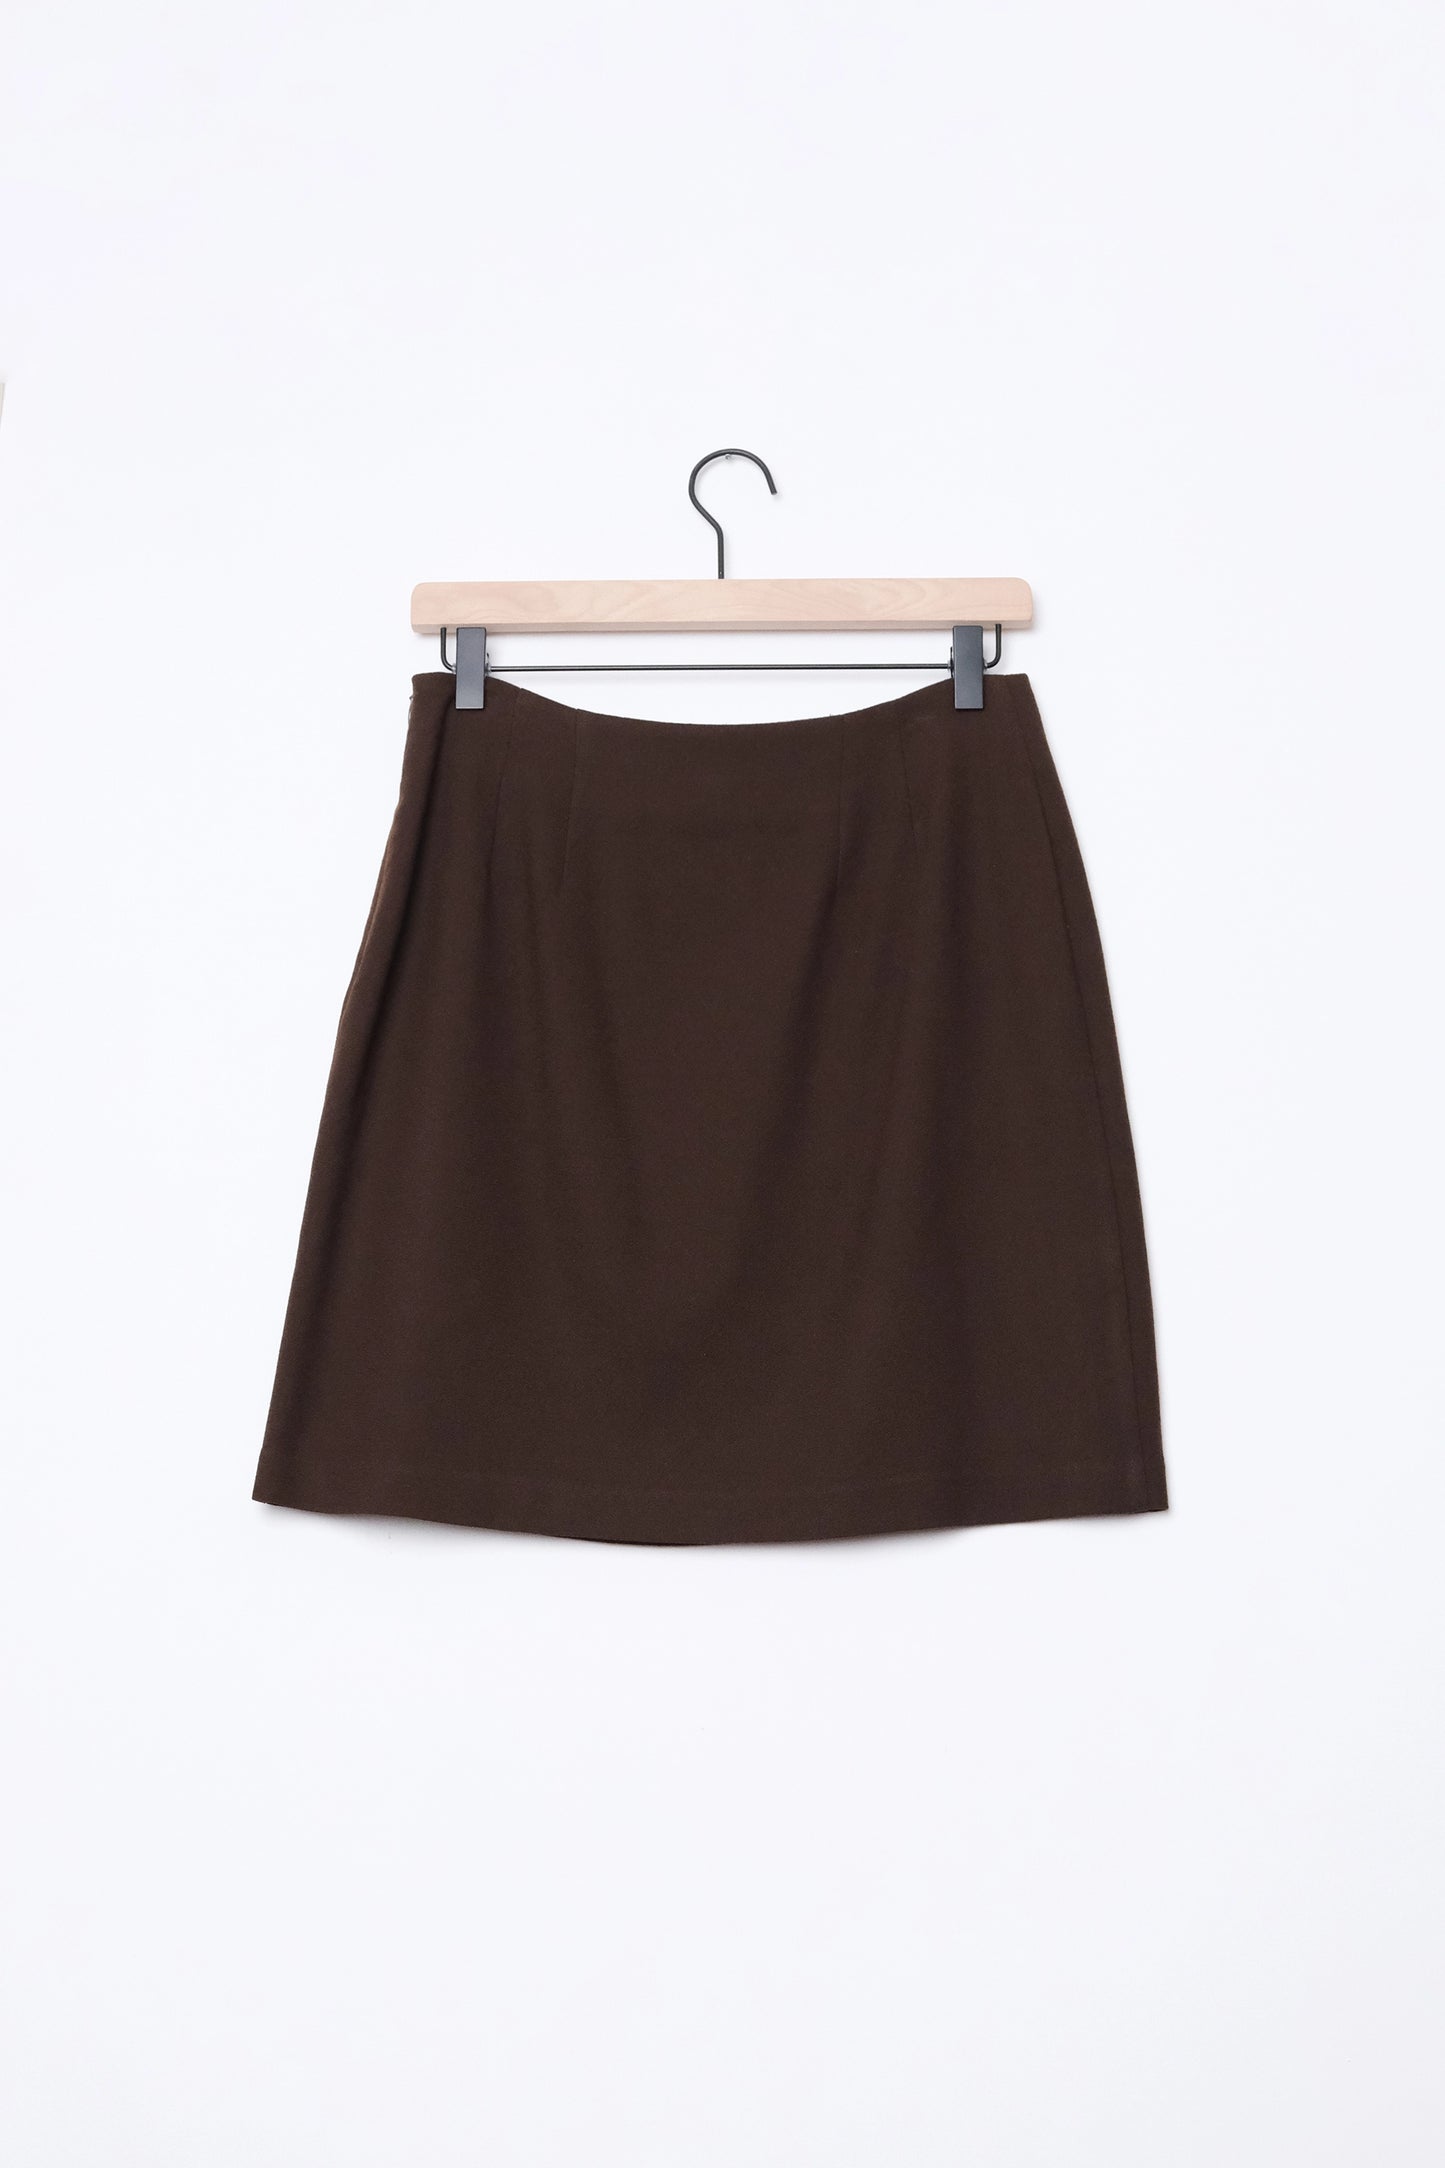 TOTOnKO Chocolate Brown Wool Mini Skirt US 6, 90's